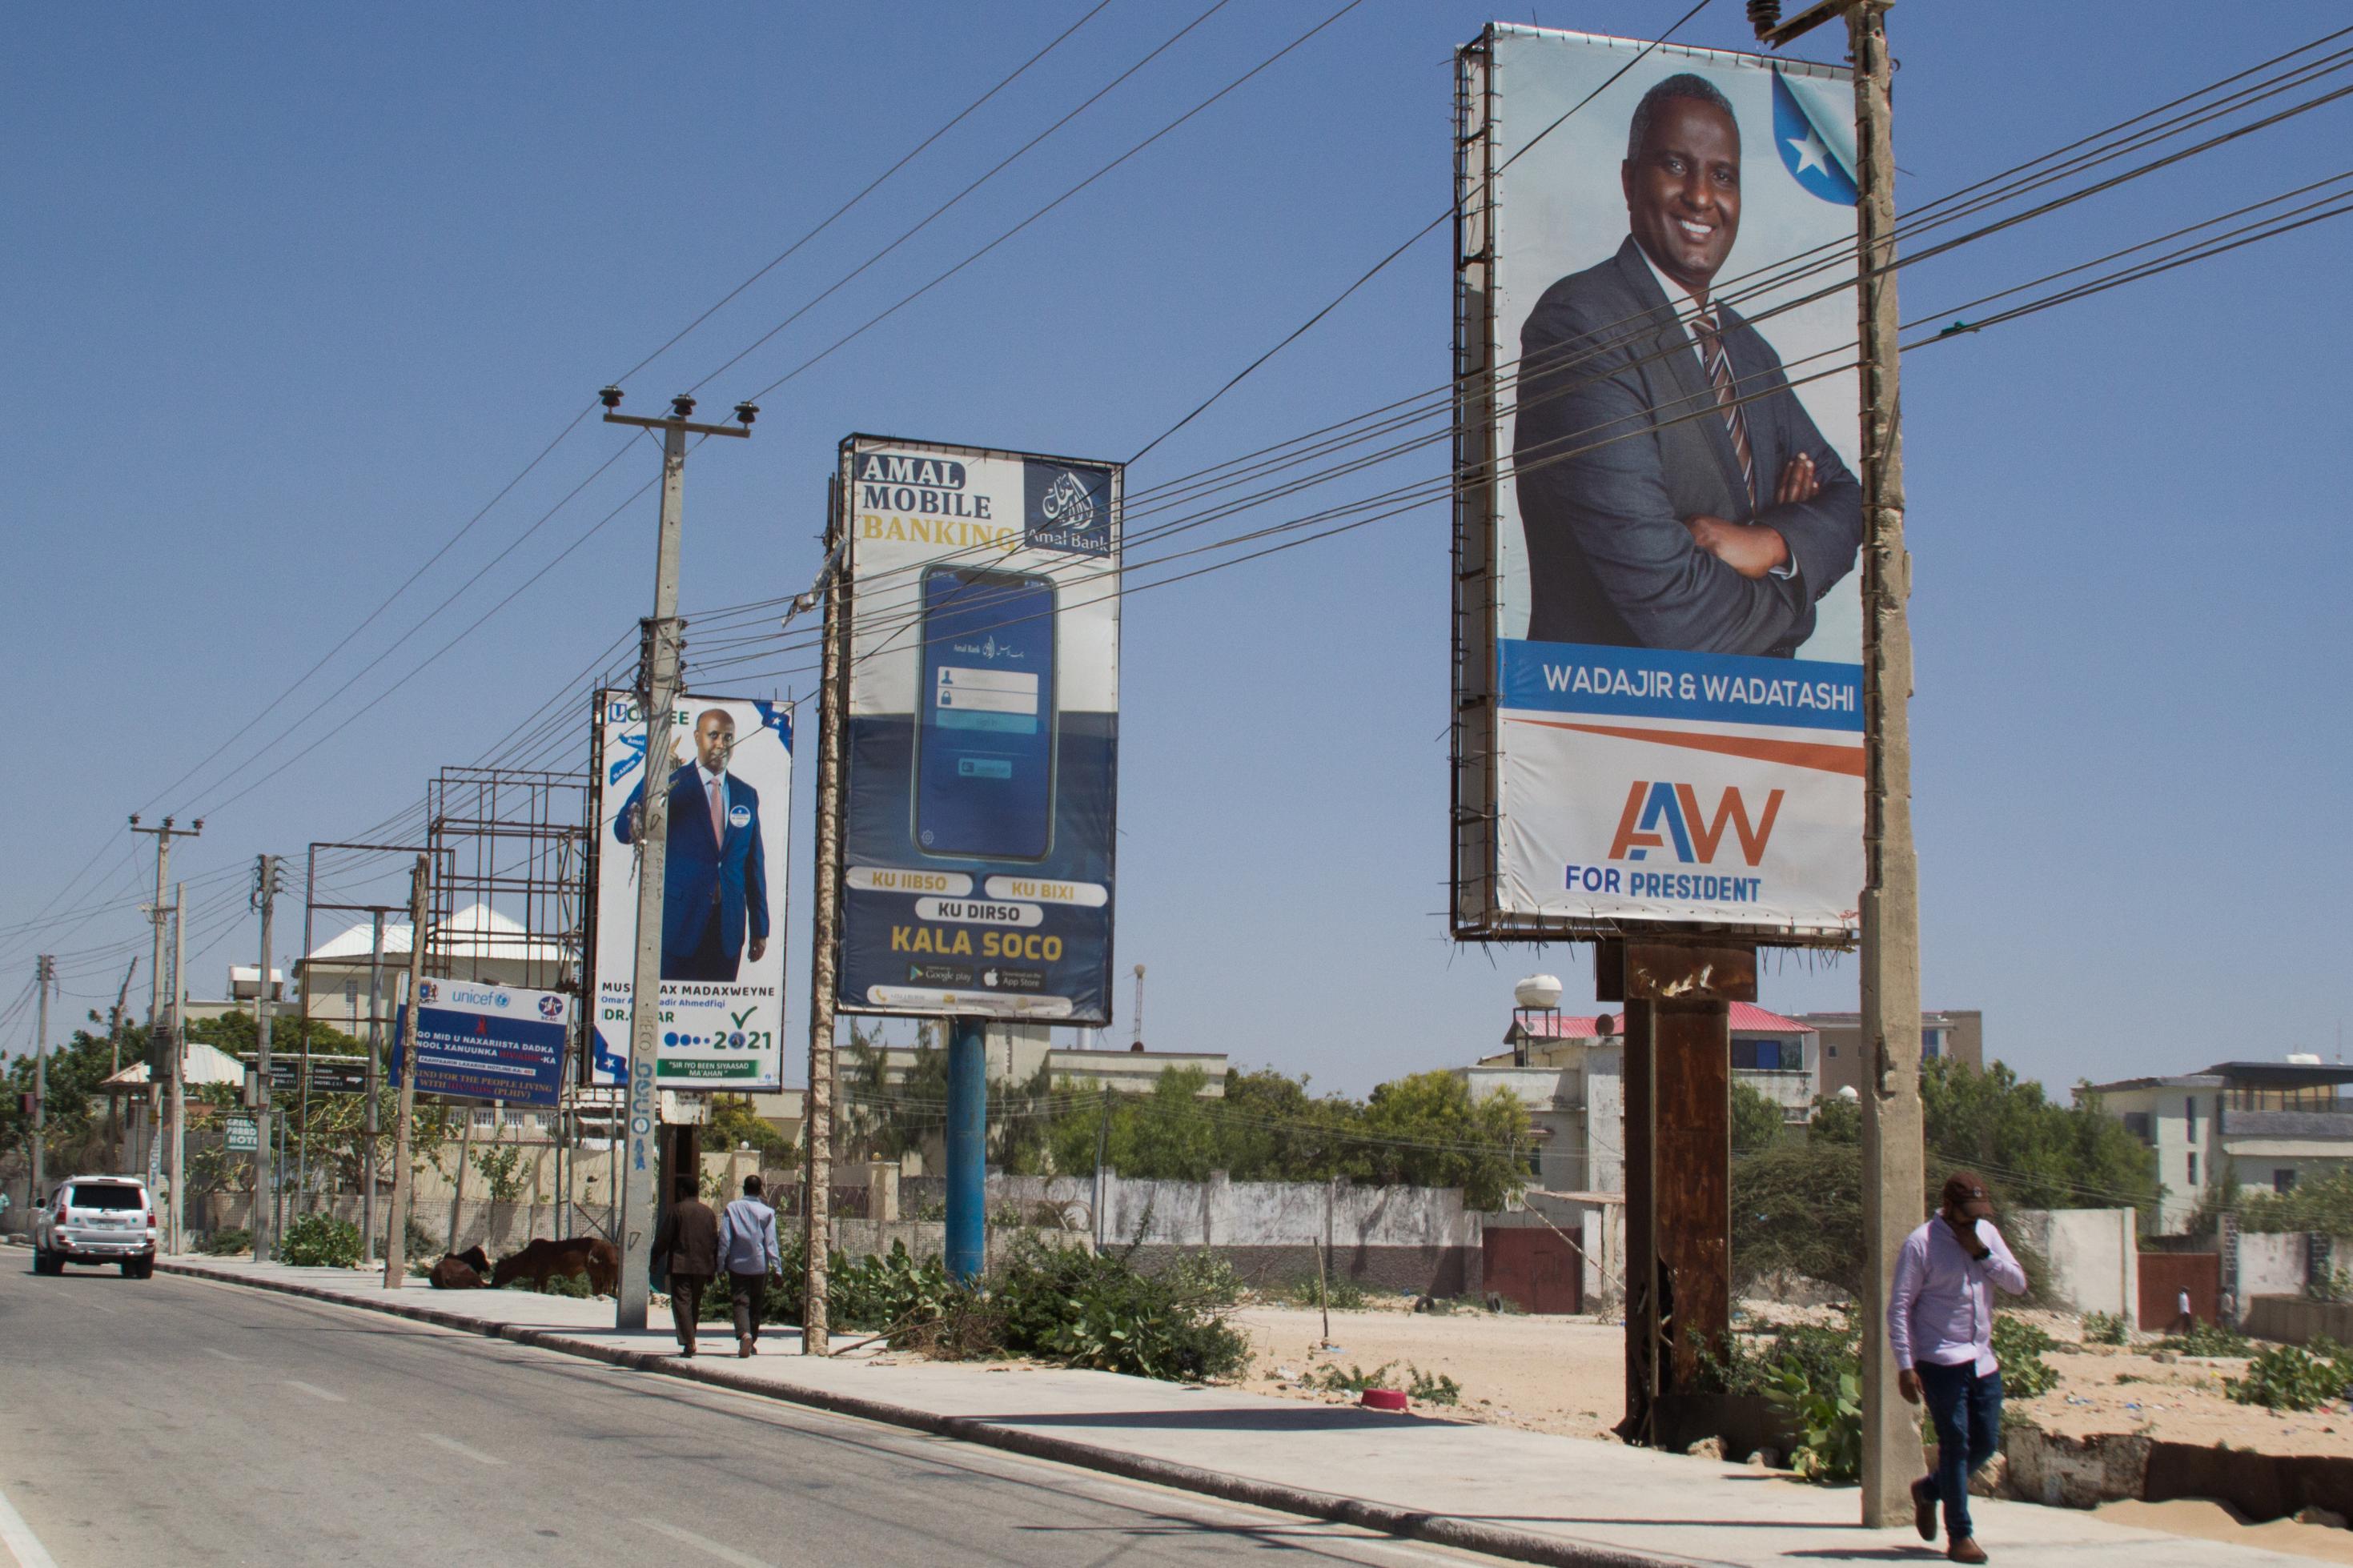 Auf dem Foto sind riesige Wahlplakate mit den Bildern von Männern zu sehen, den Bewerbern für die Präsidentschaftswahl in Somalia.